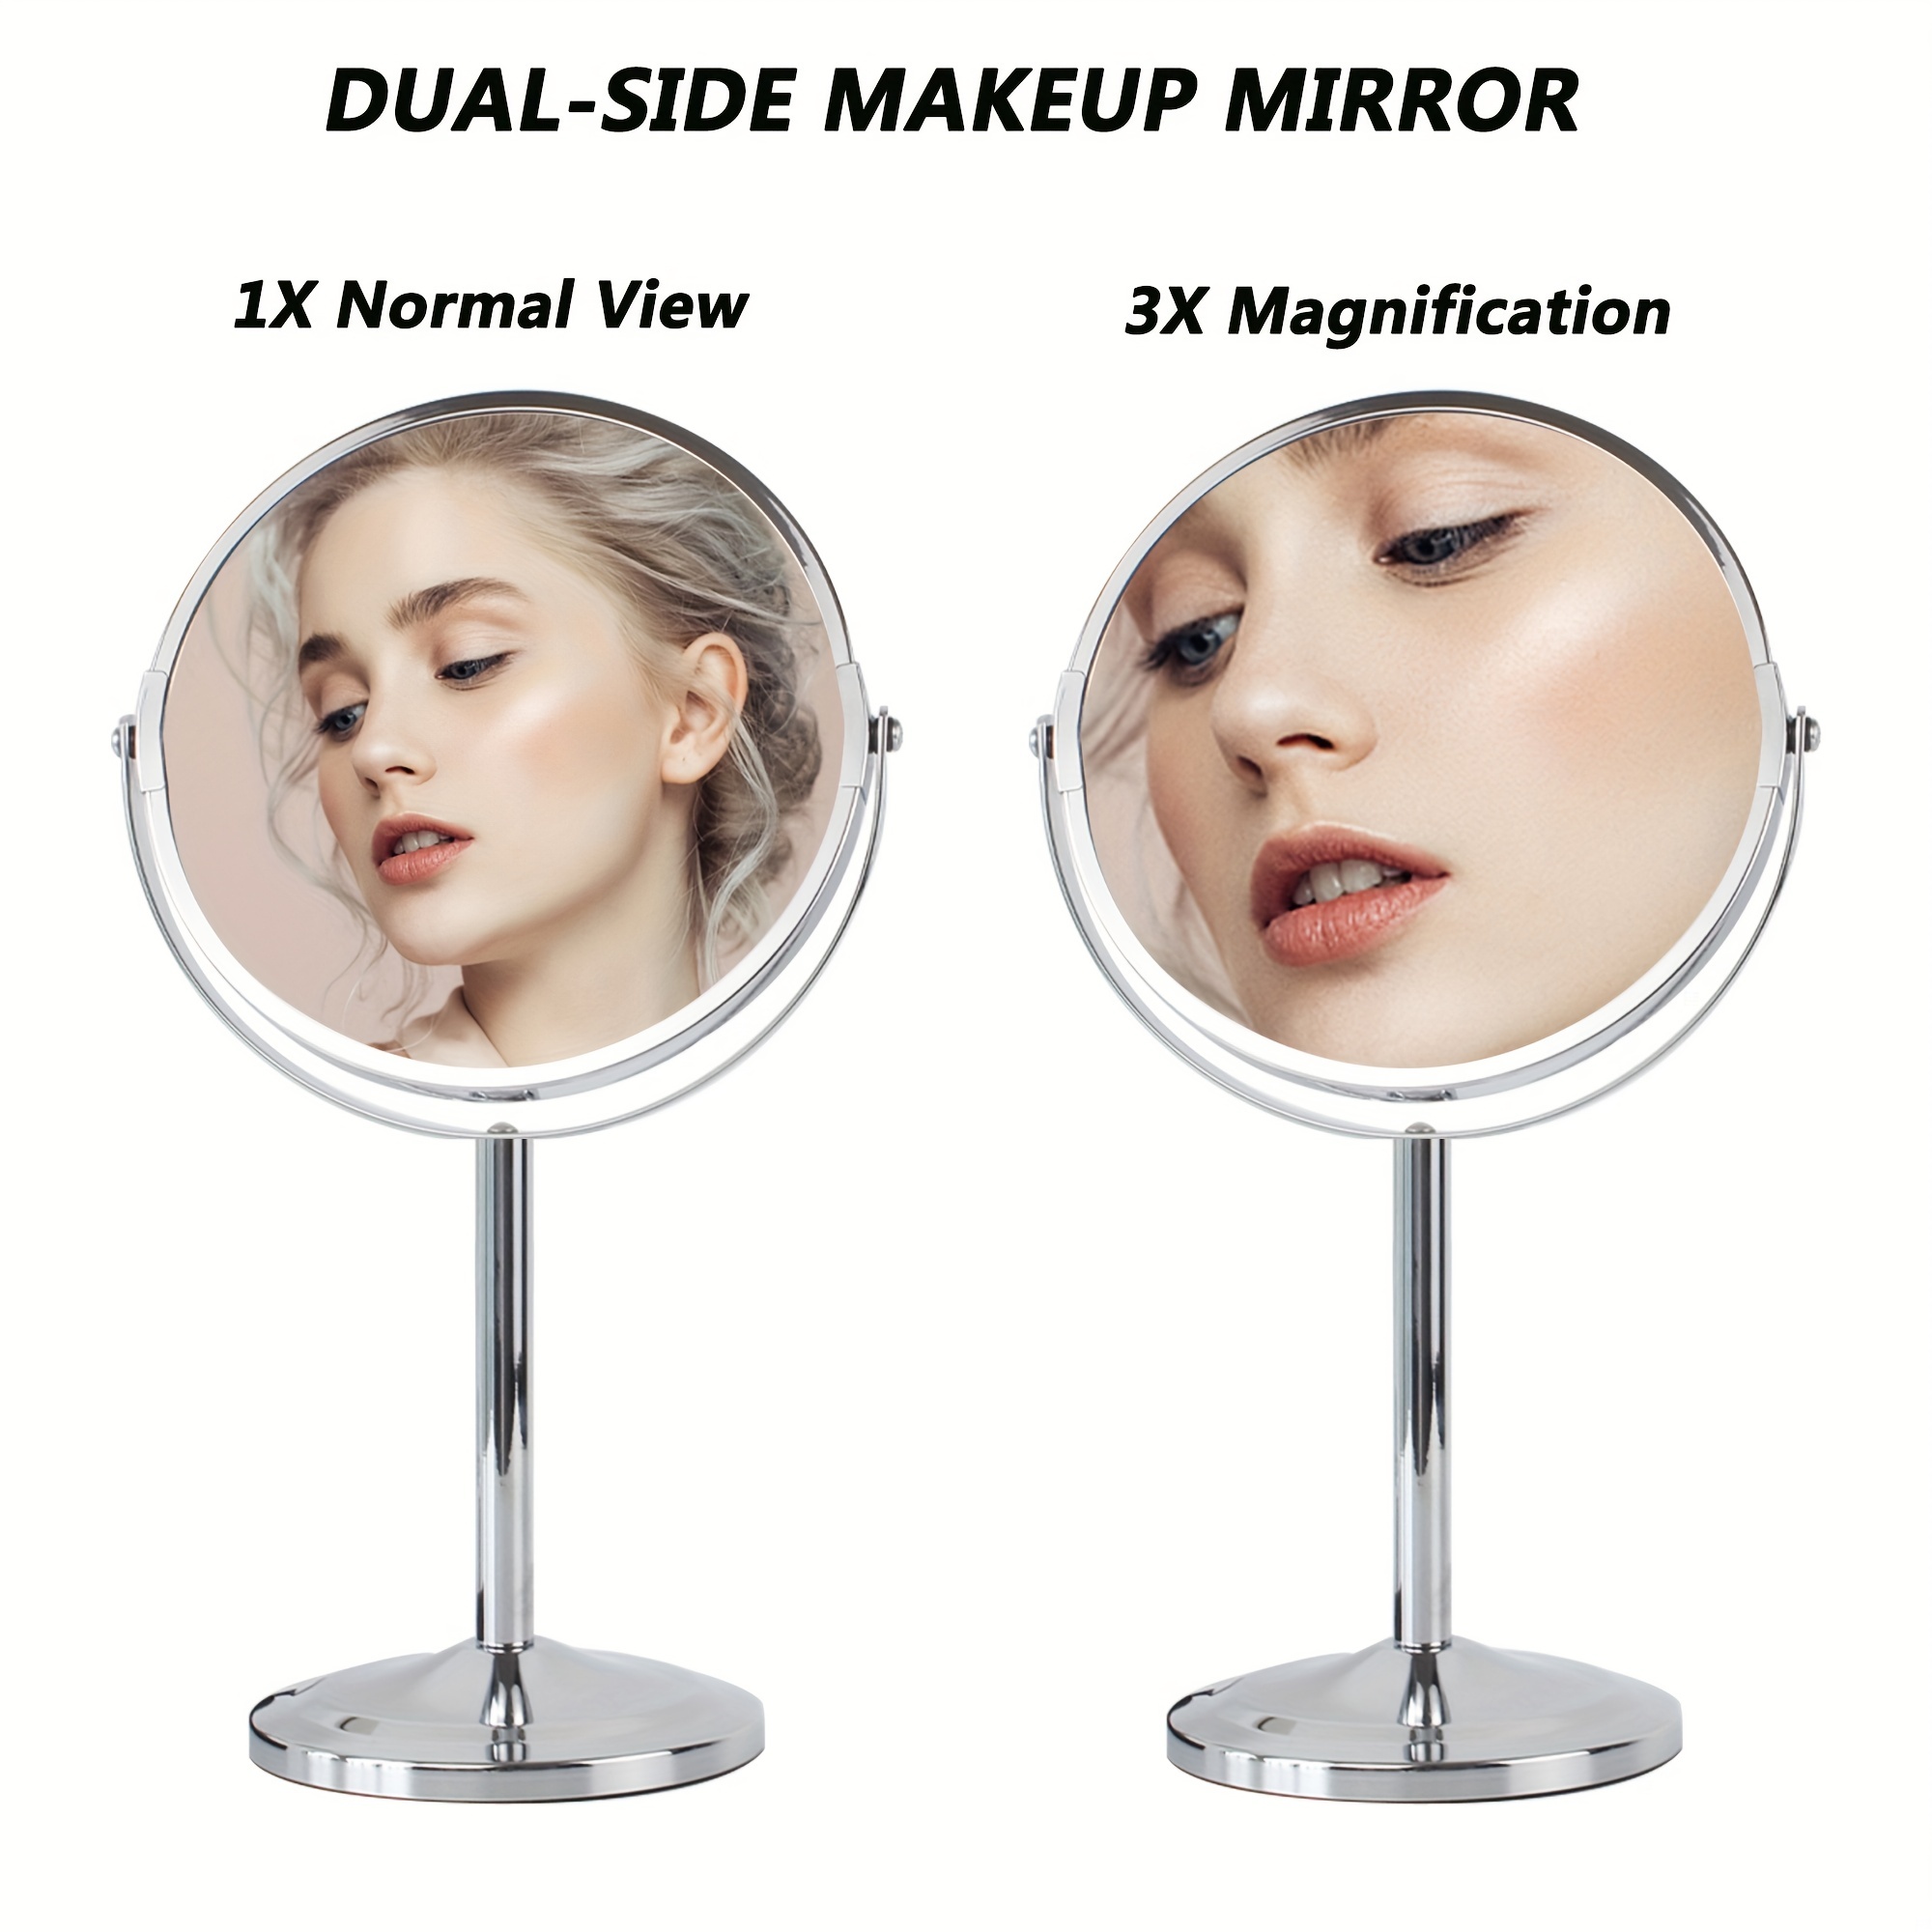  Espejo de maquillaje, espejo de aumento de doble cara de 8  pulgadas, espejo de aumento de afeitado de doble cara, montado en la pared para  baño, espejos de tocador redondos extensibles